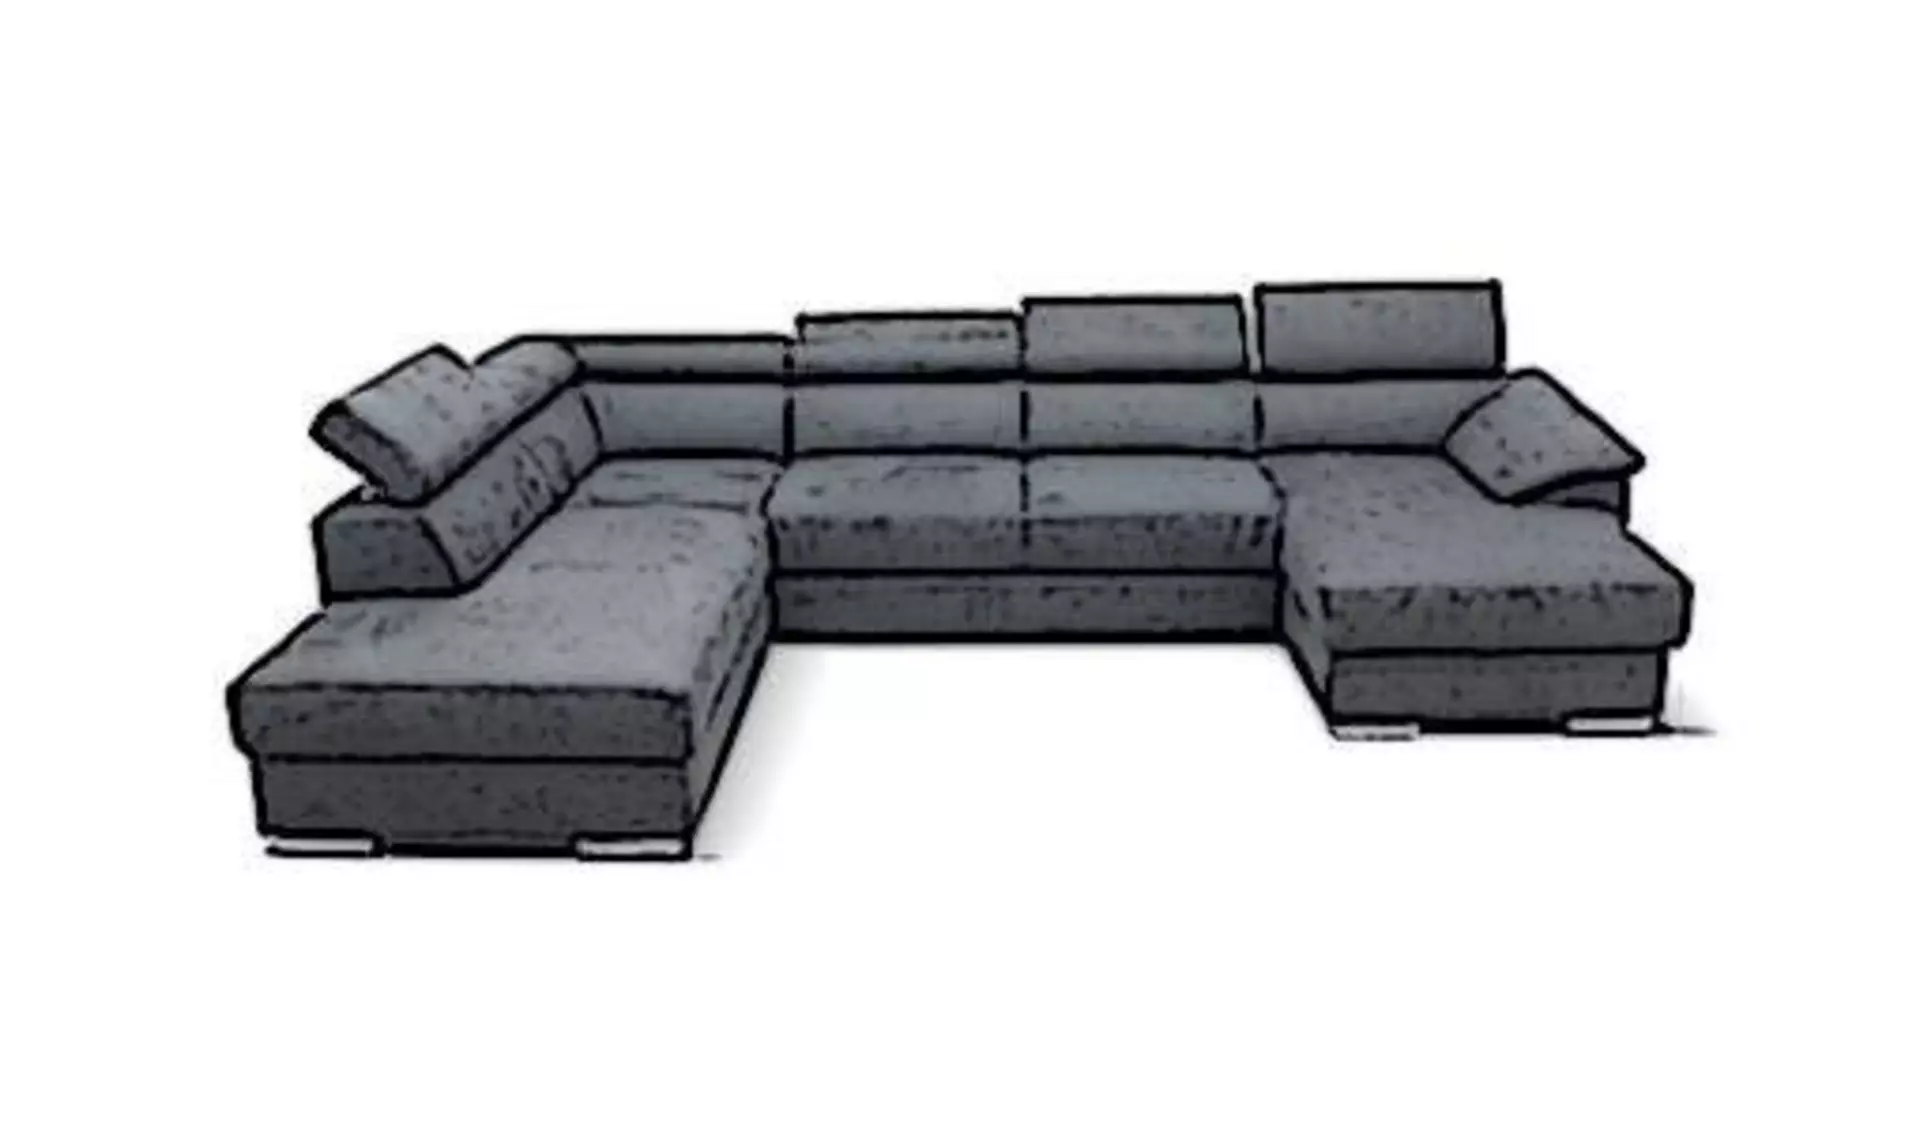 Die Kategorie "Wohnlandschaft" innerhalb "Sofa und Couches" wird durch ein großes dunkelgraues Sofa dargestellt. Das Sofa hat eine U-Form und zeigt verstellbare Rückenlehnen und Kopfstützen.